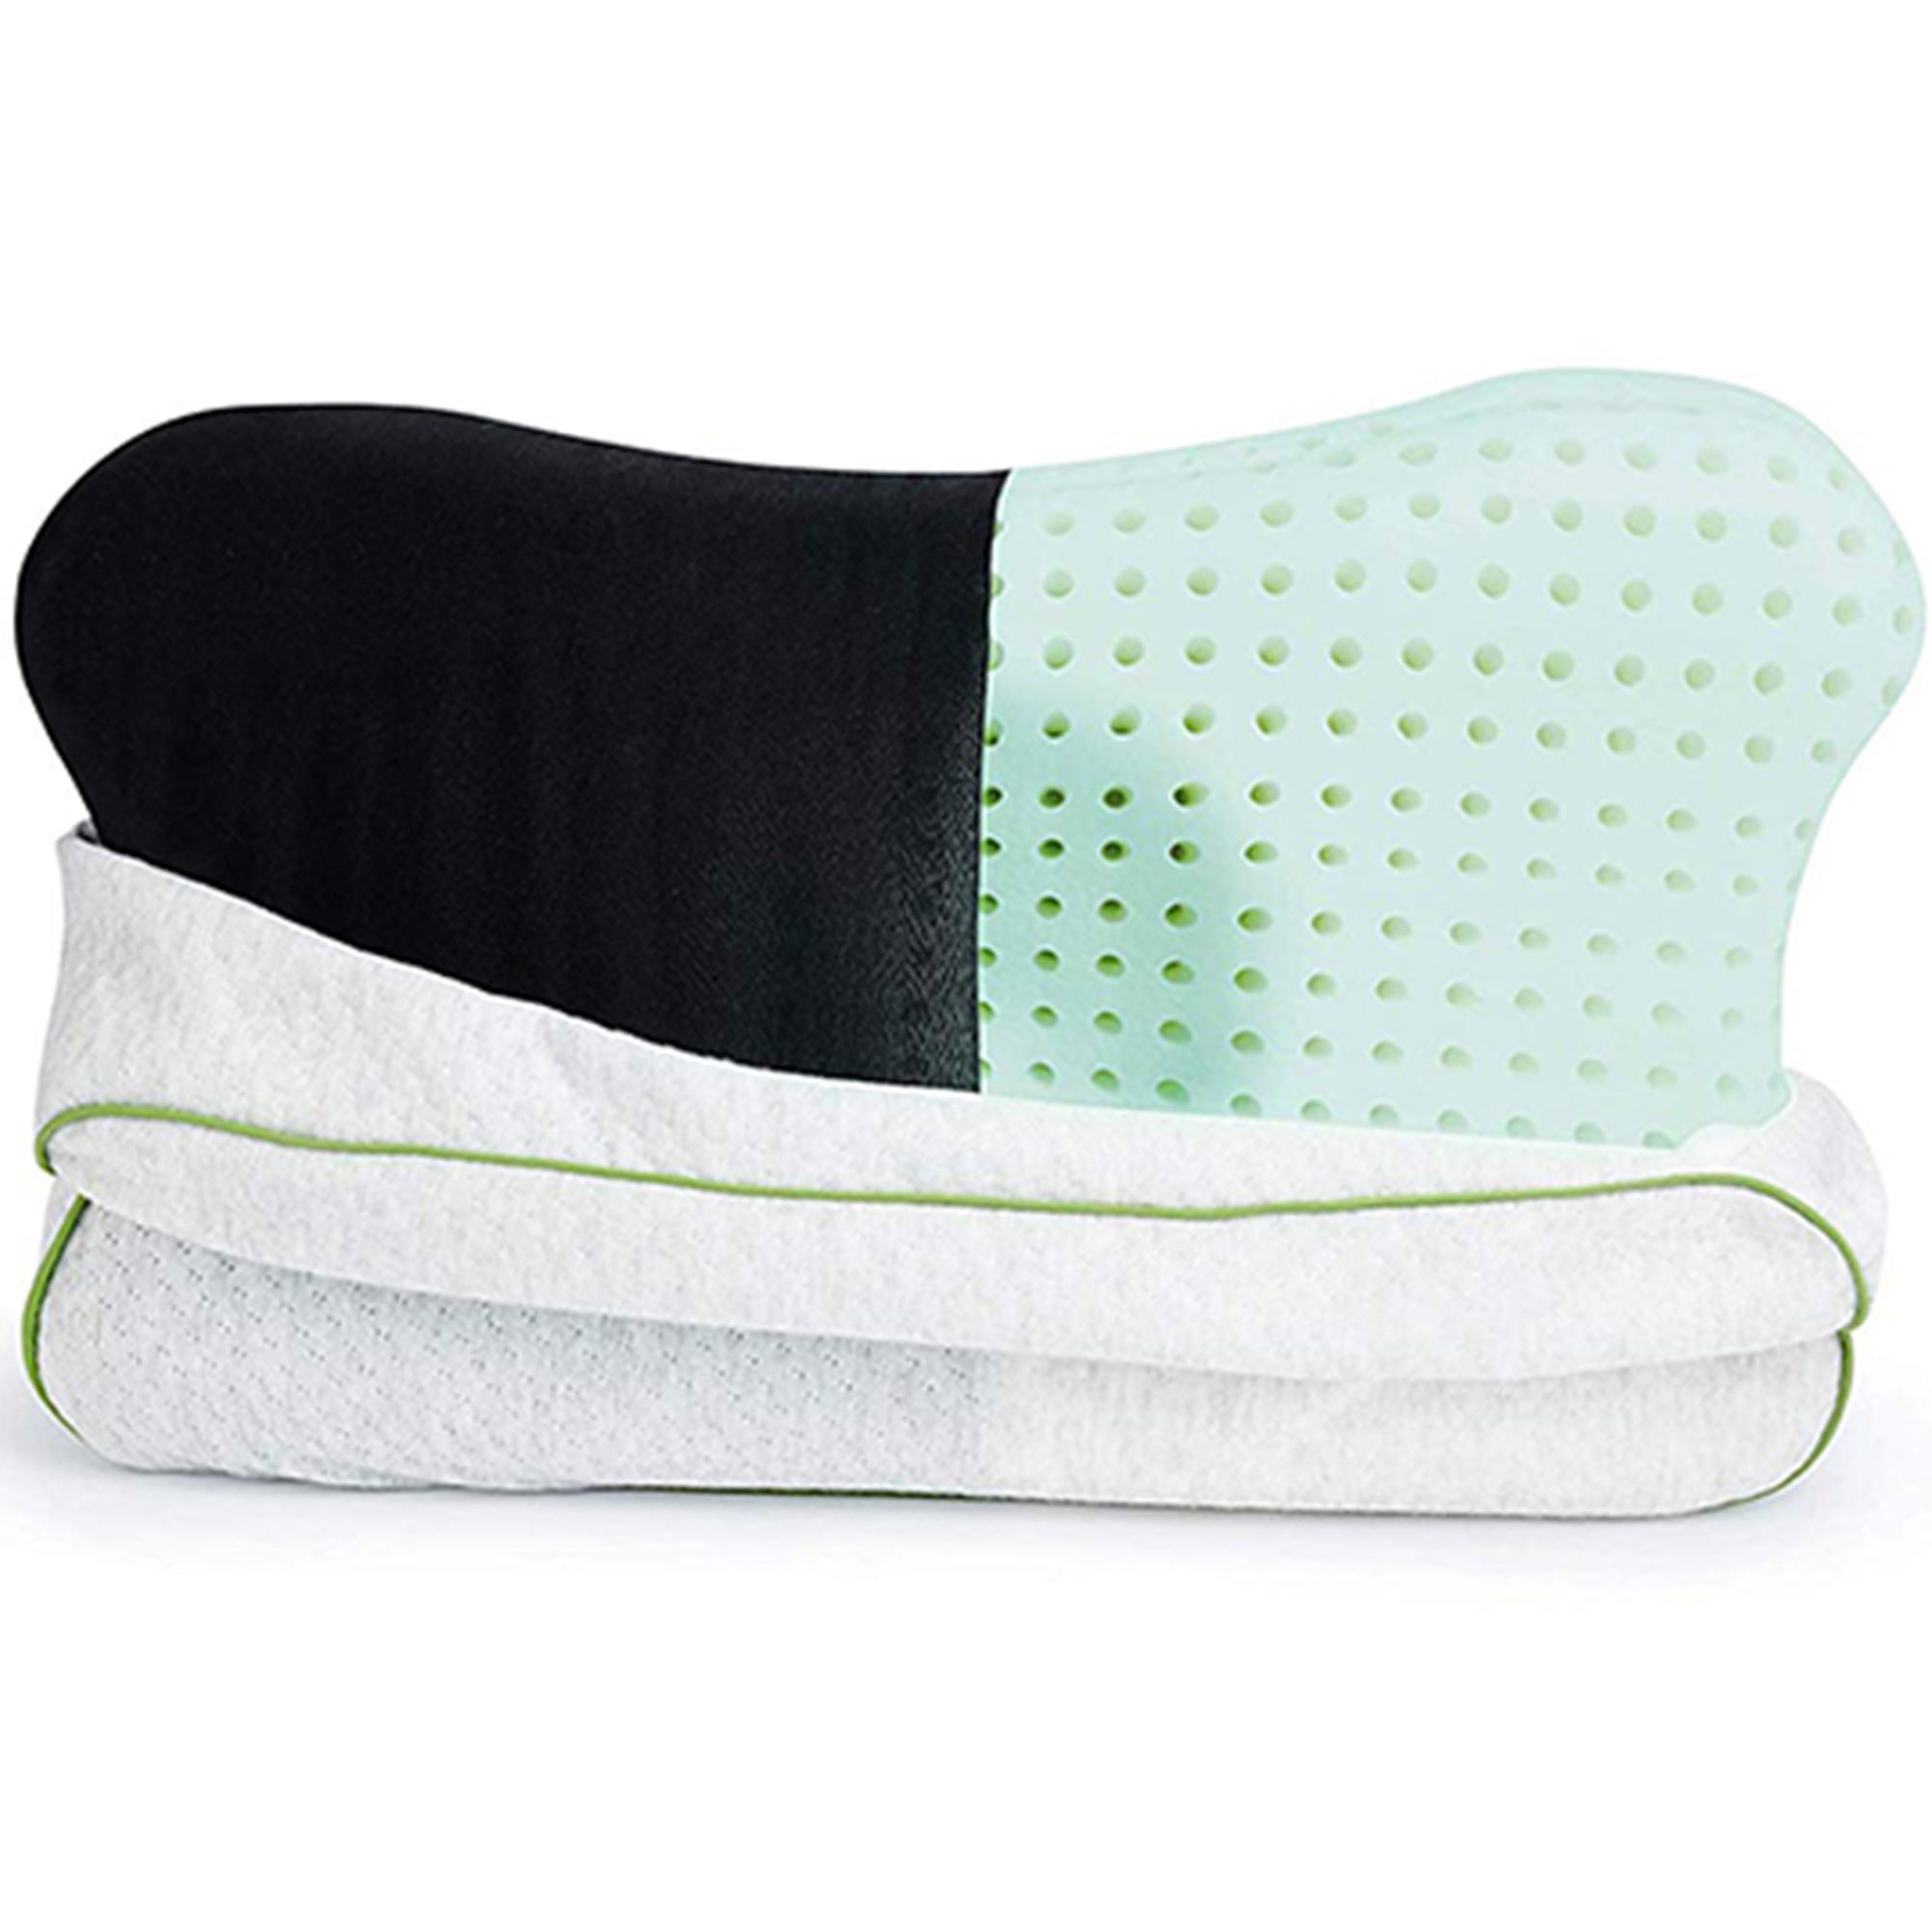 Recovery Pillow - Handlich und hygienisch - Ergonomische Form erlaubt 4 Schlafpositionen